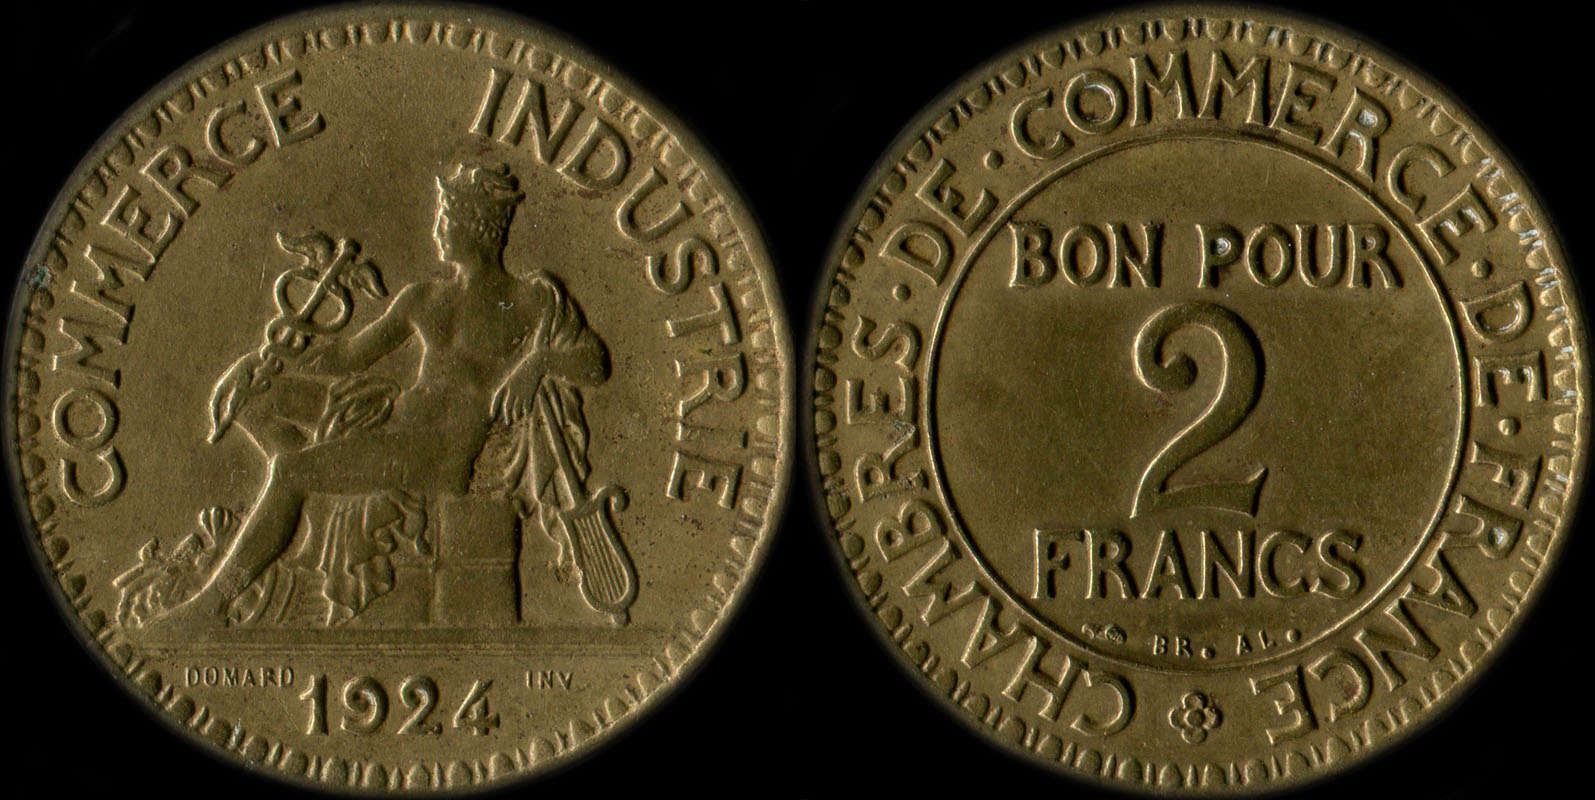 Pice de 2 francs 1924 variante avec 4 ouvert